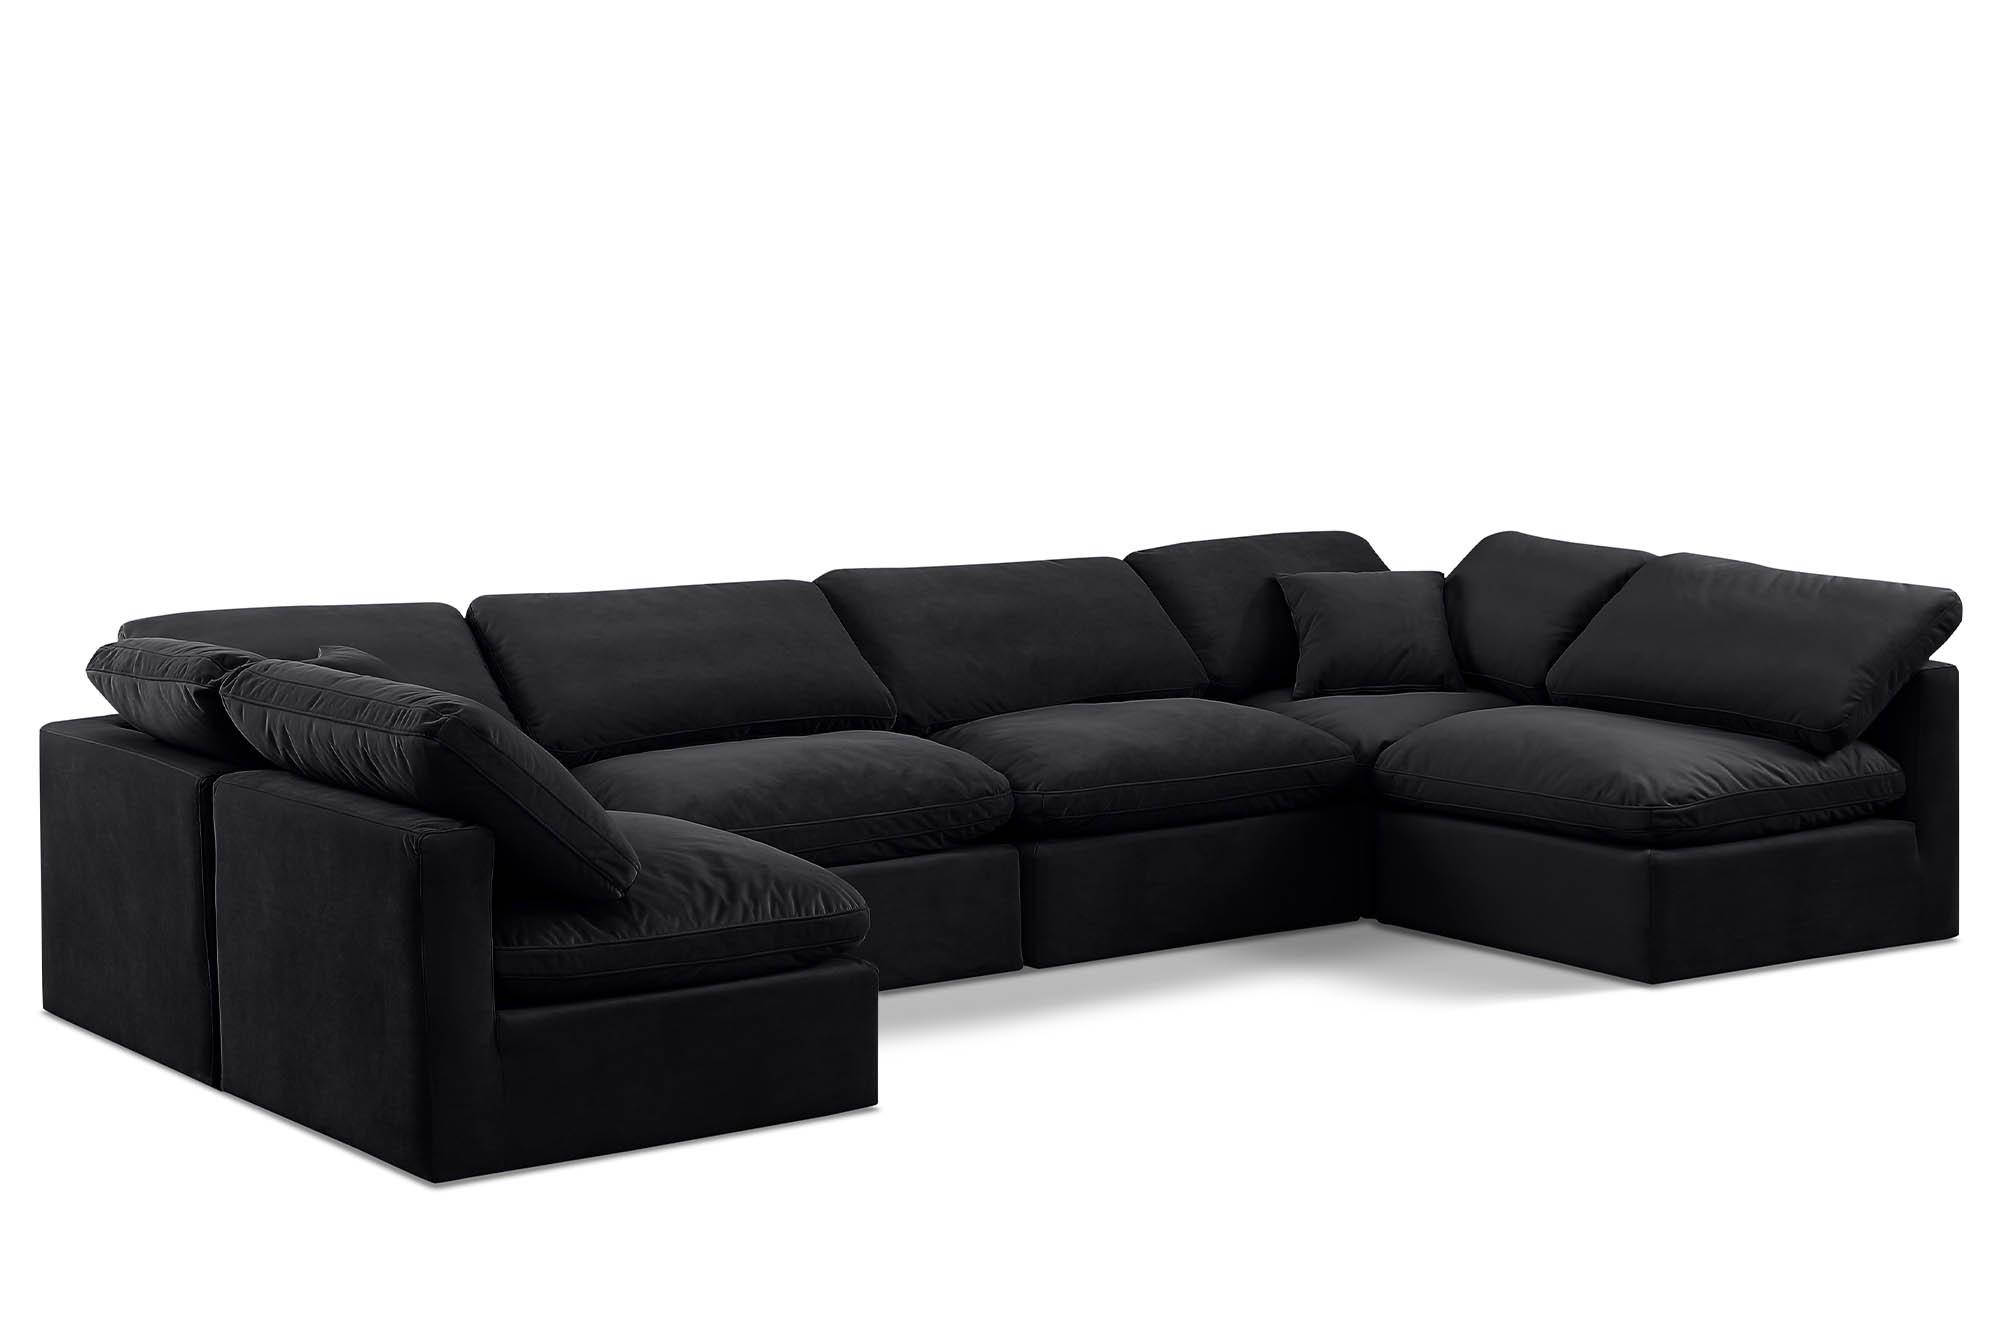 Contemporary, Modern Modular Sectional Sofa INDULGE 147Black-Sec6D 147Black-Sec6D in Black Velvet